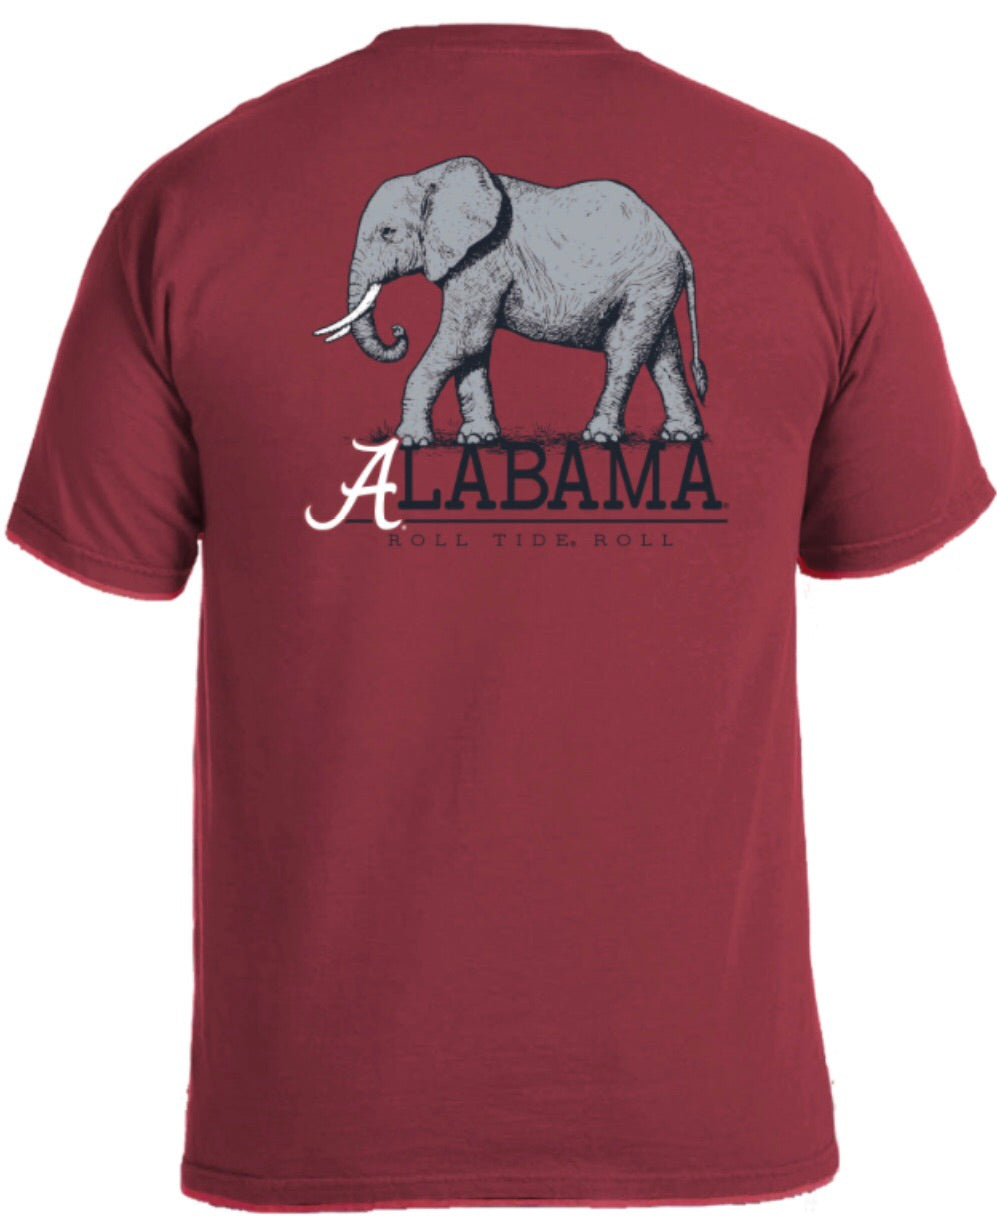 Alabama "Mascot T" Comfort Color